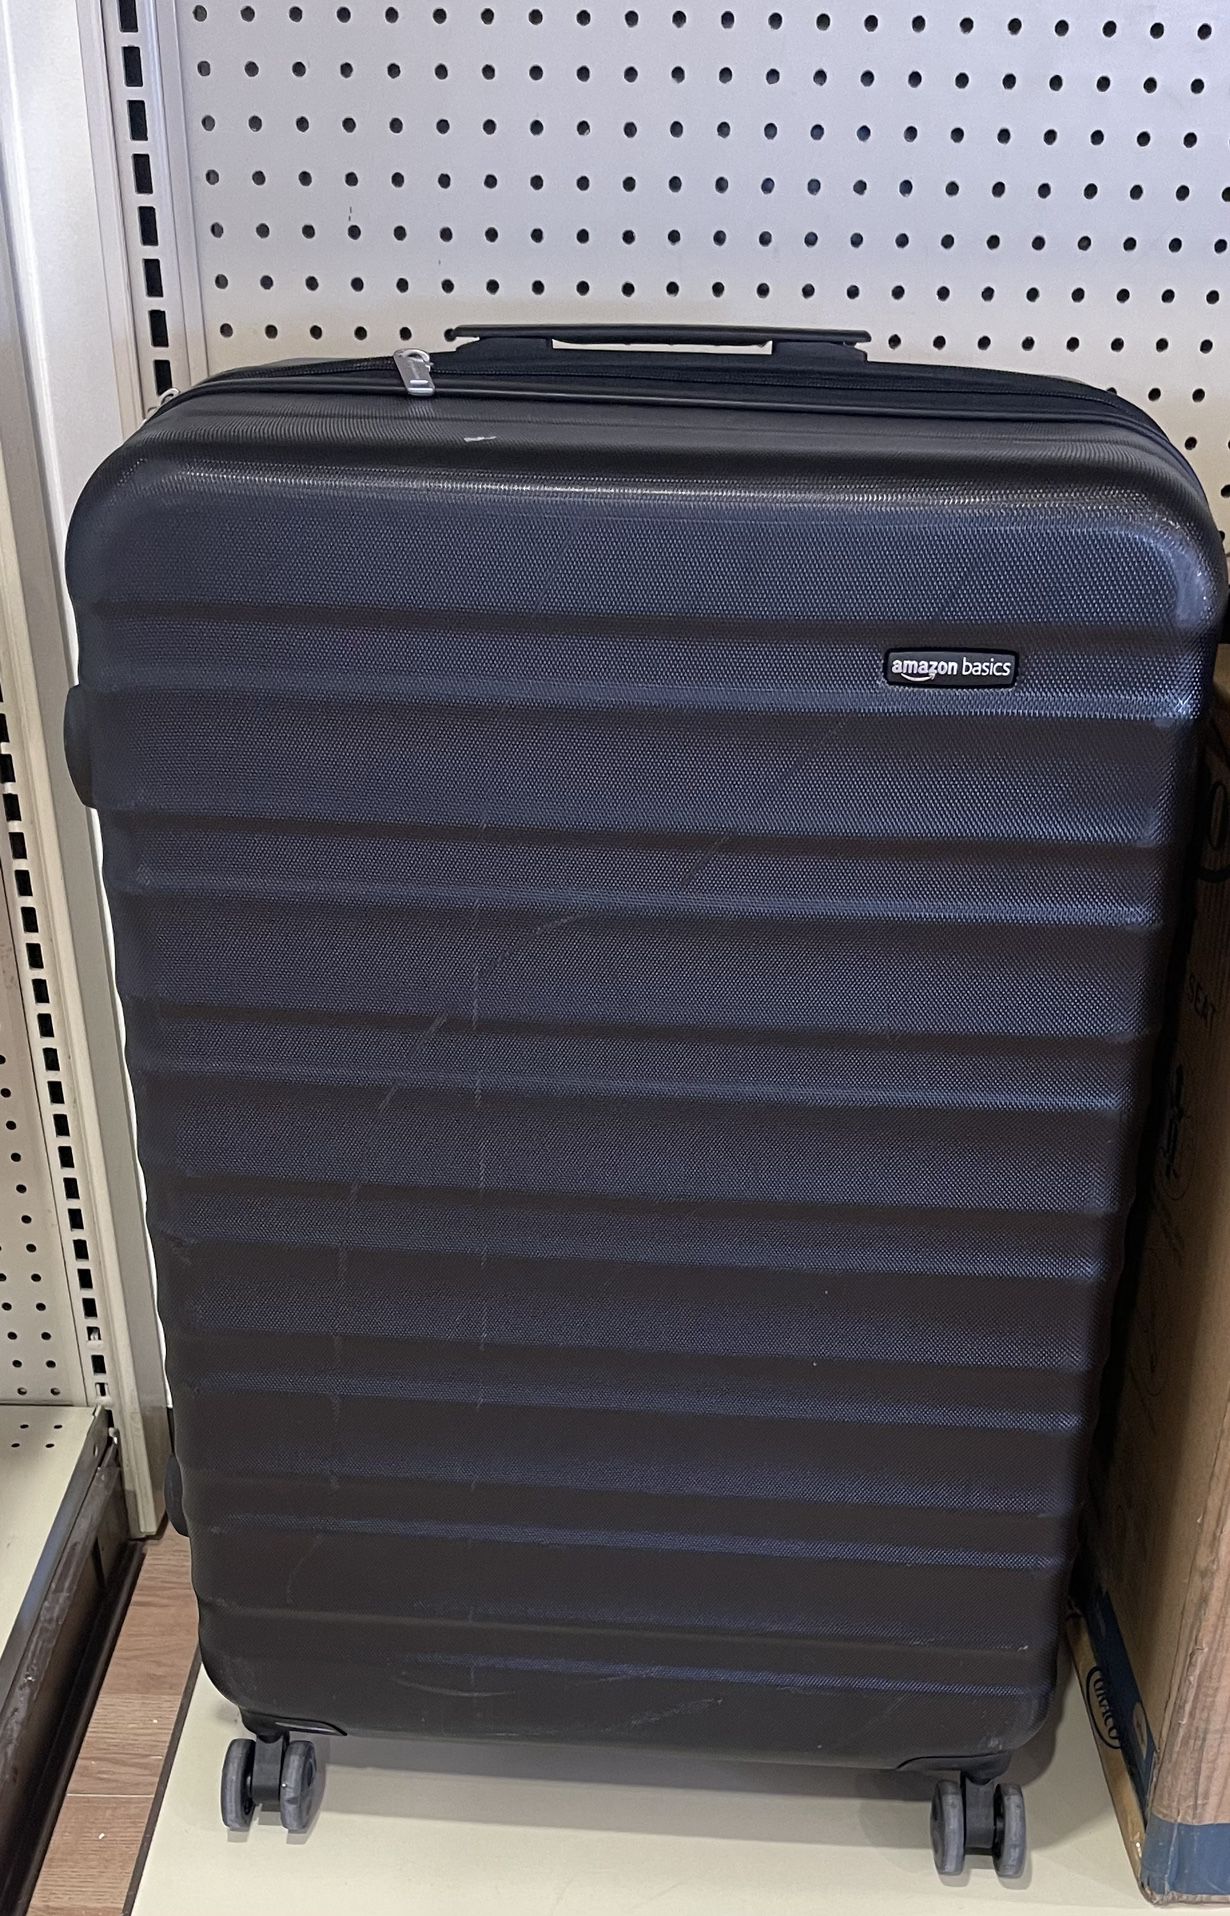 Amazon basic large suitcase 